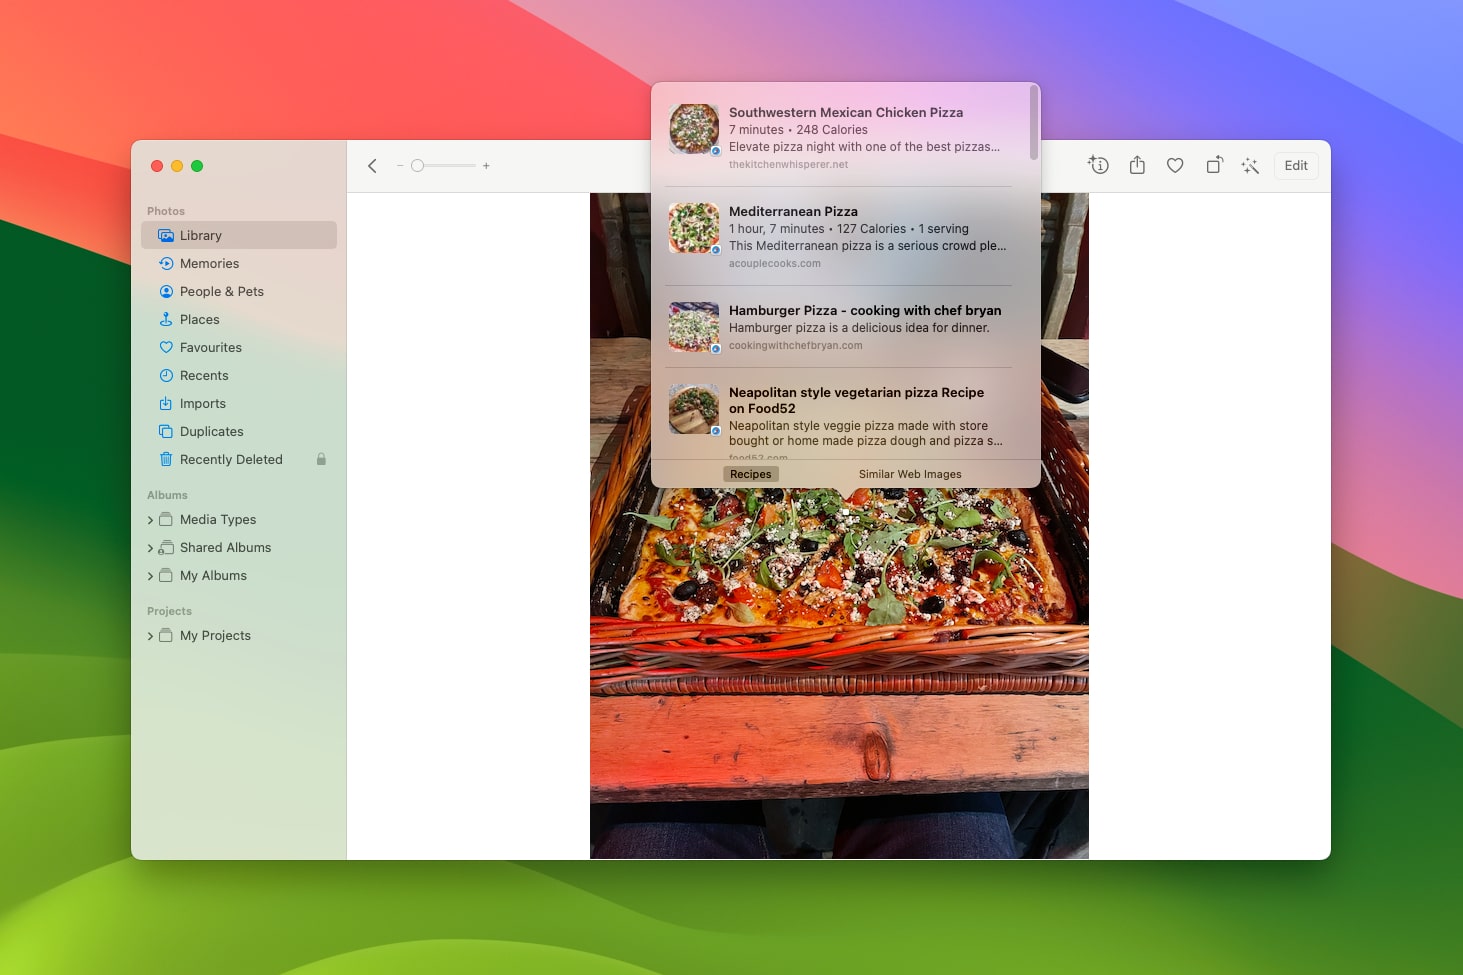 Visual Look Up گسترده در macOS Sonoma.  یک کاربر در حال جستجوی دستور العمل های مربوط به پیتزا است که در عکس موجود است.